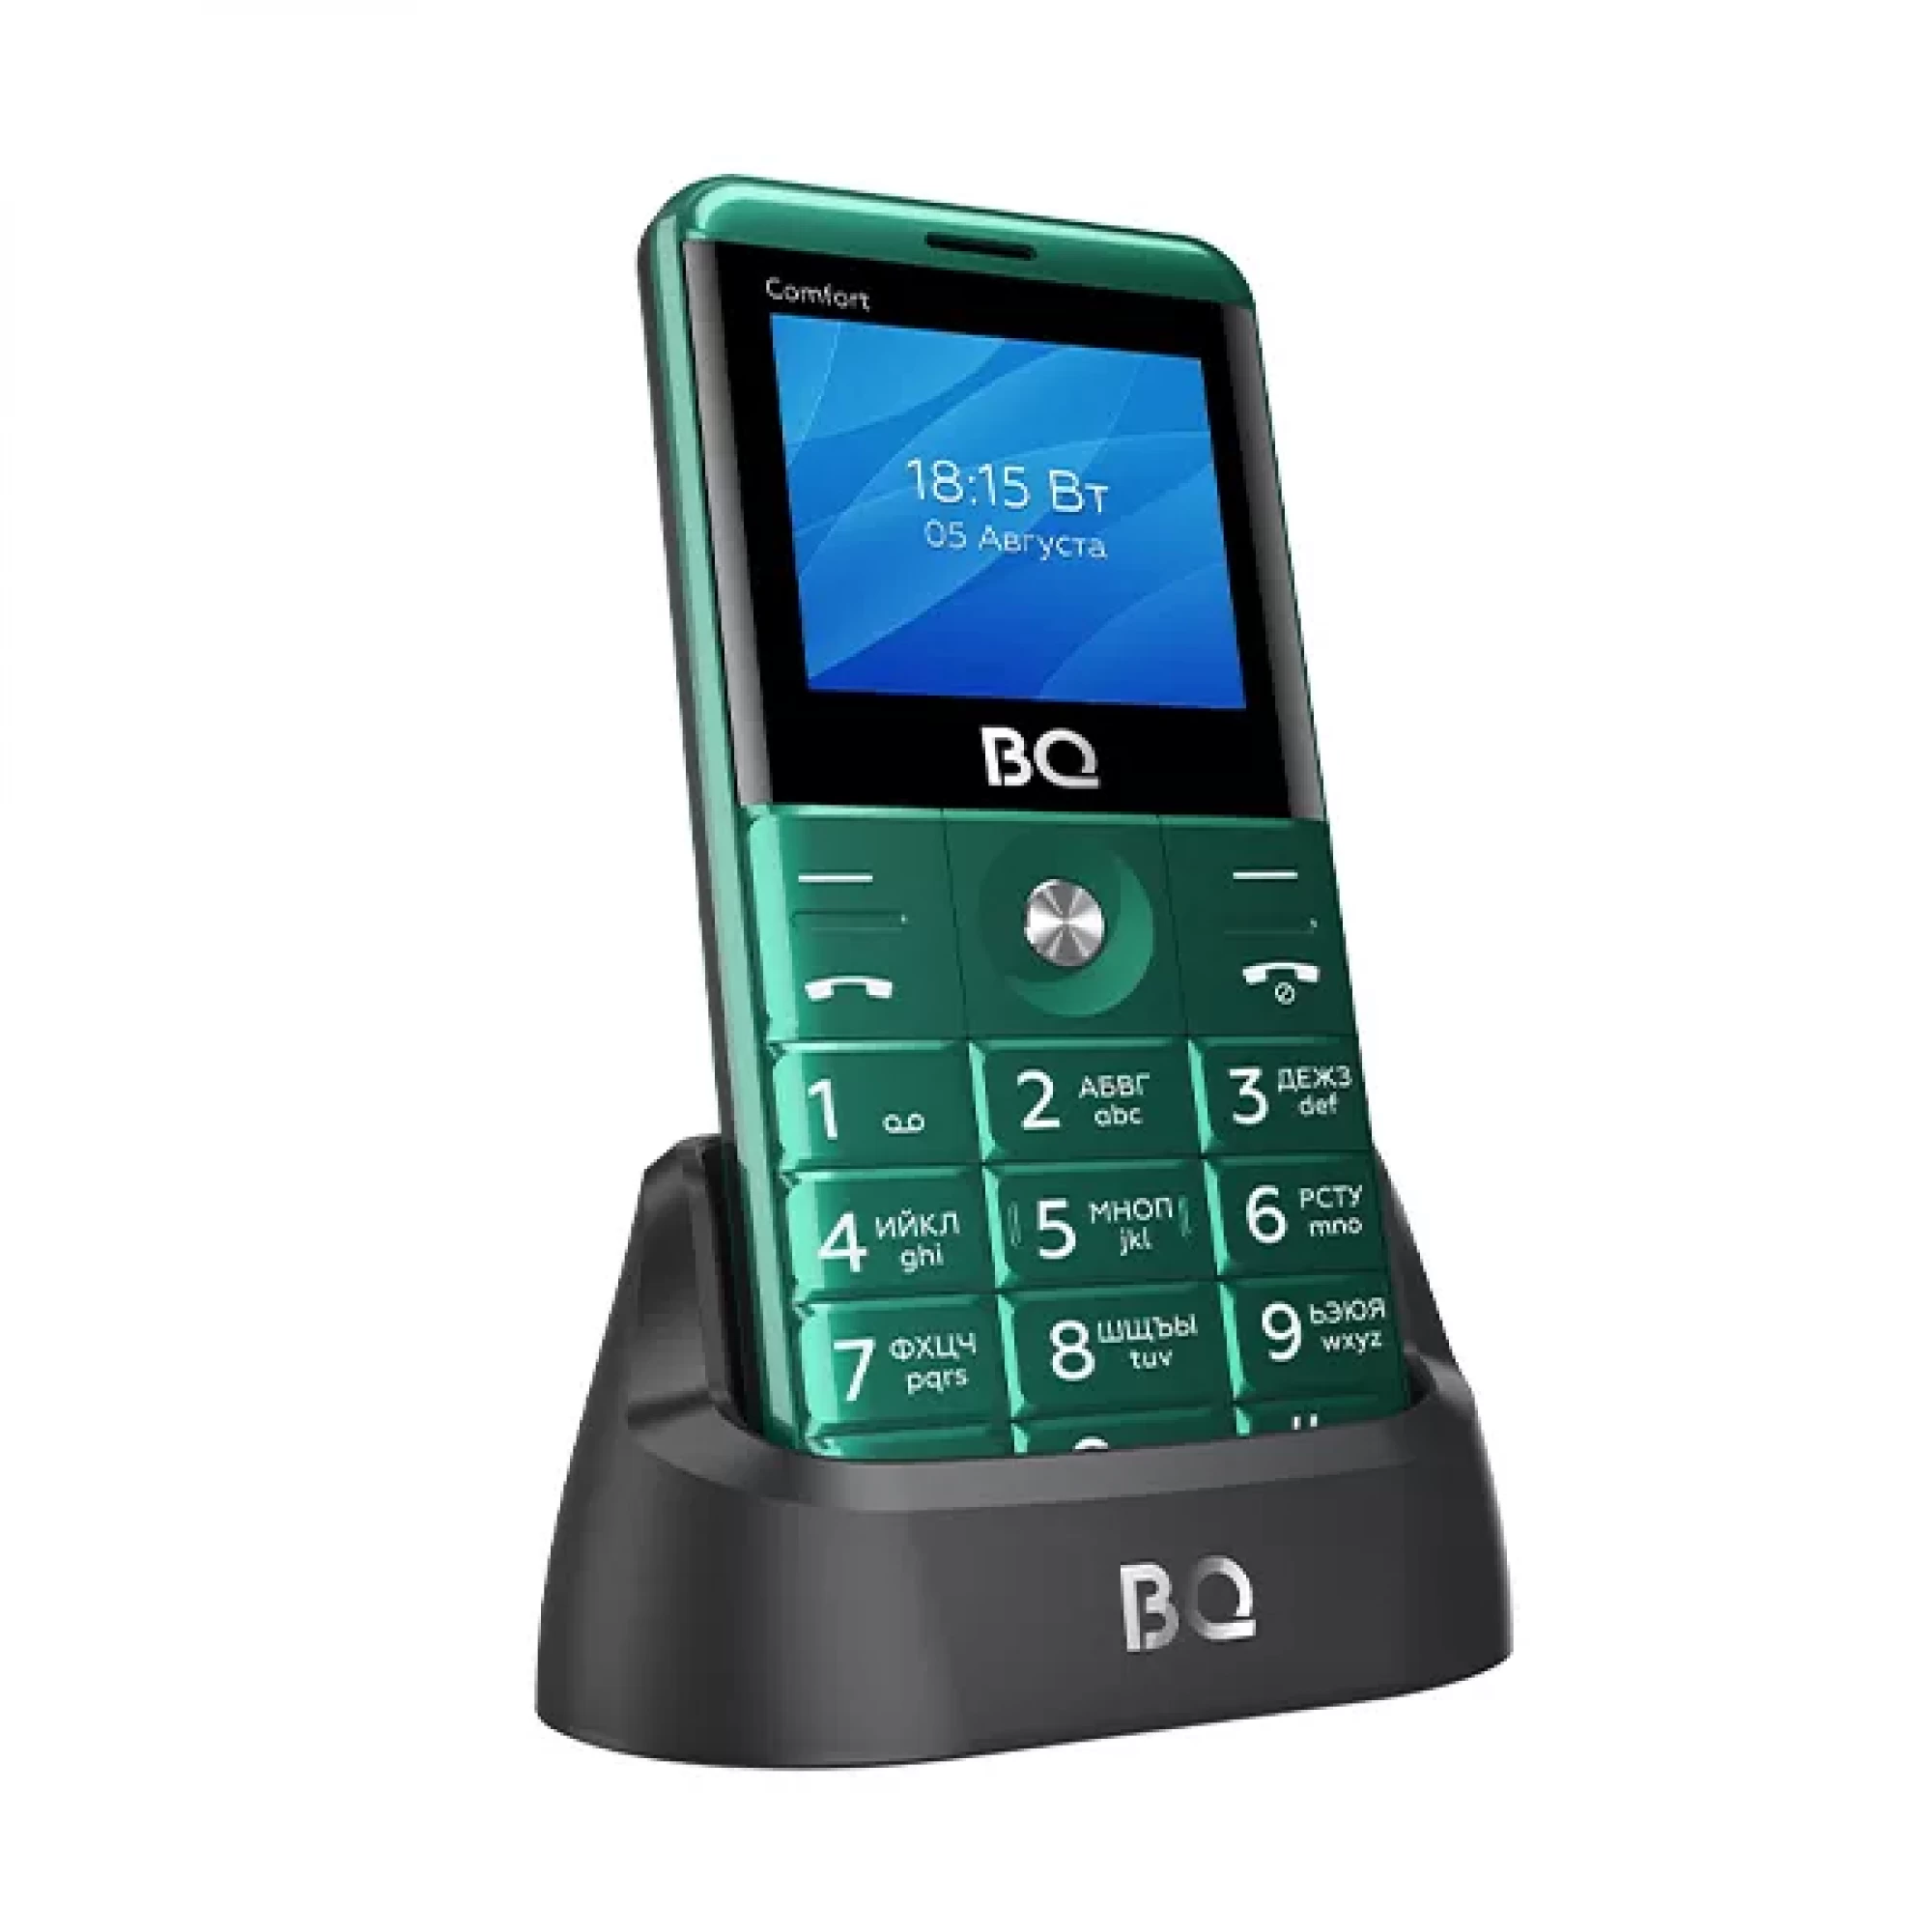 Мобильный телефон BQ BQ-2006 Comfort (синий)